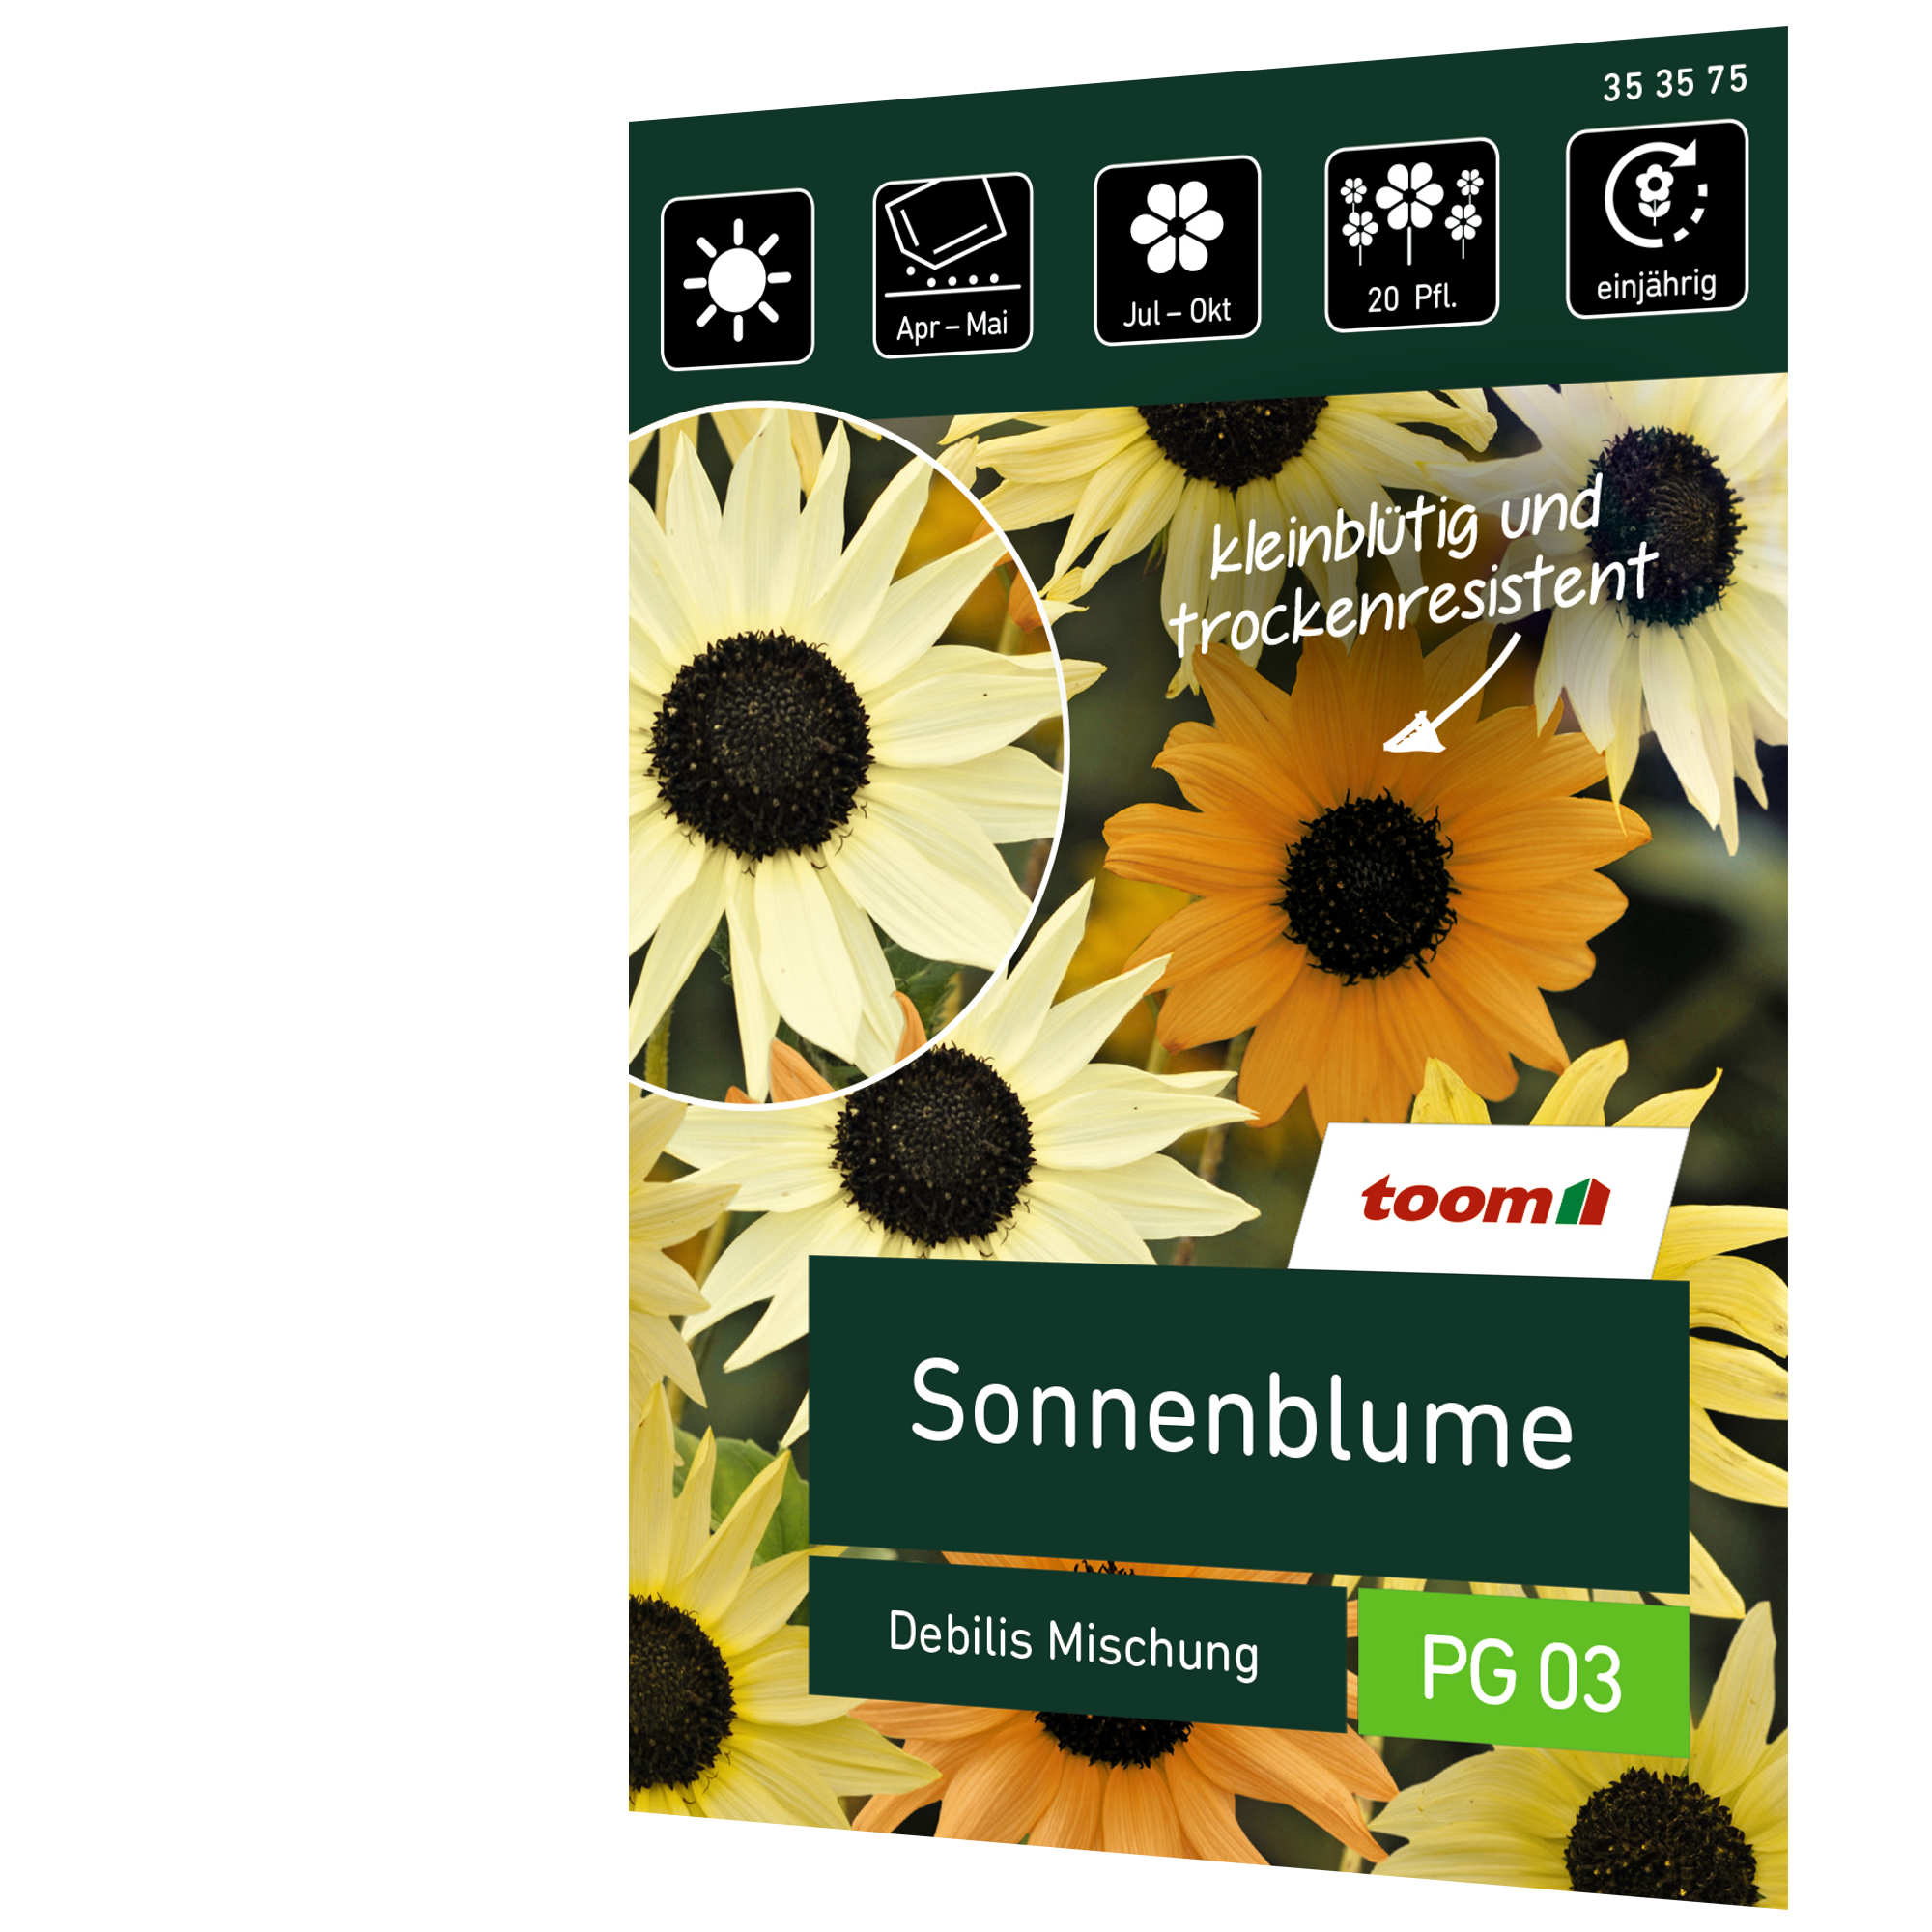 Sonnenblume 'Debilis Mischung' + product picture